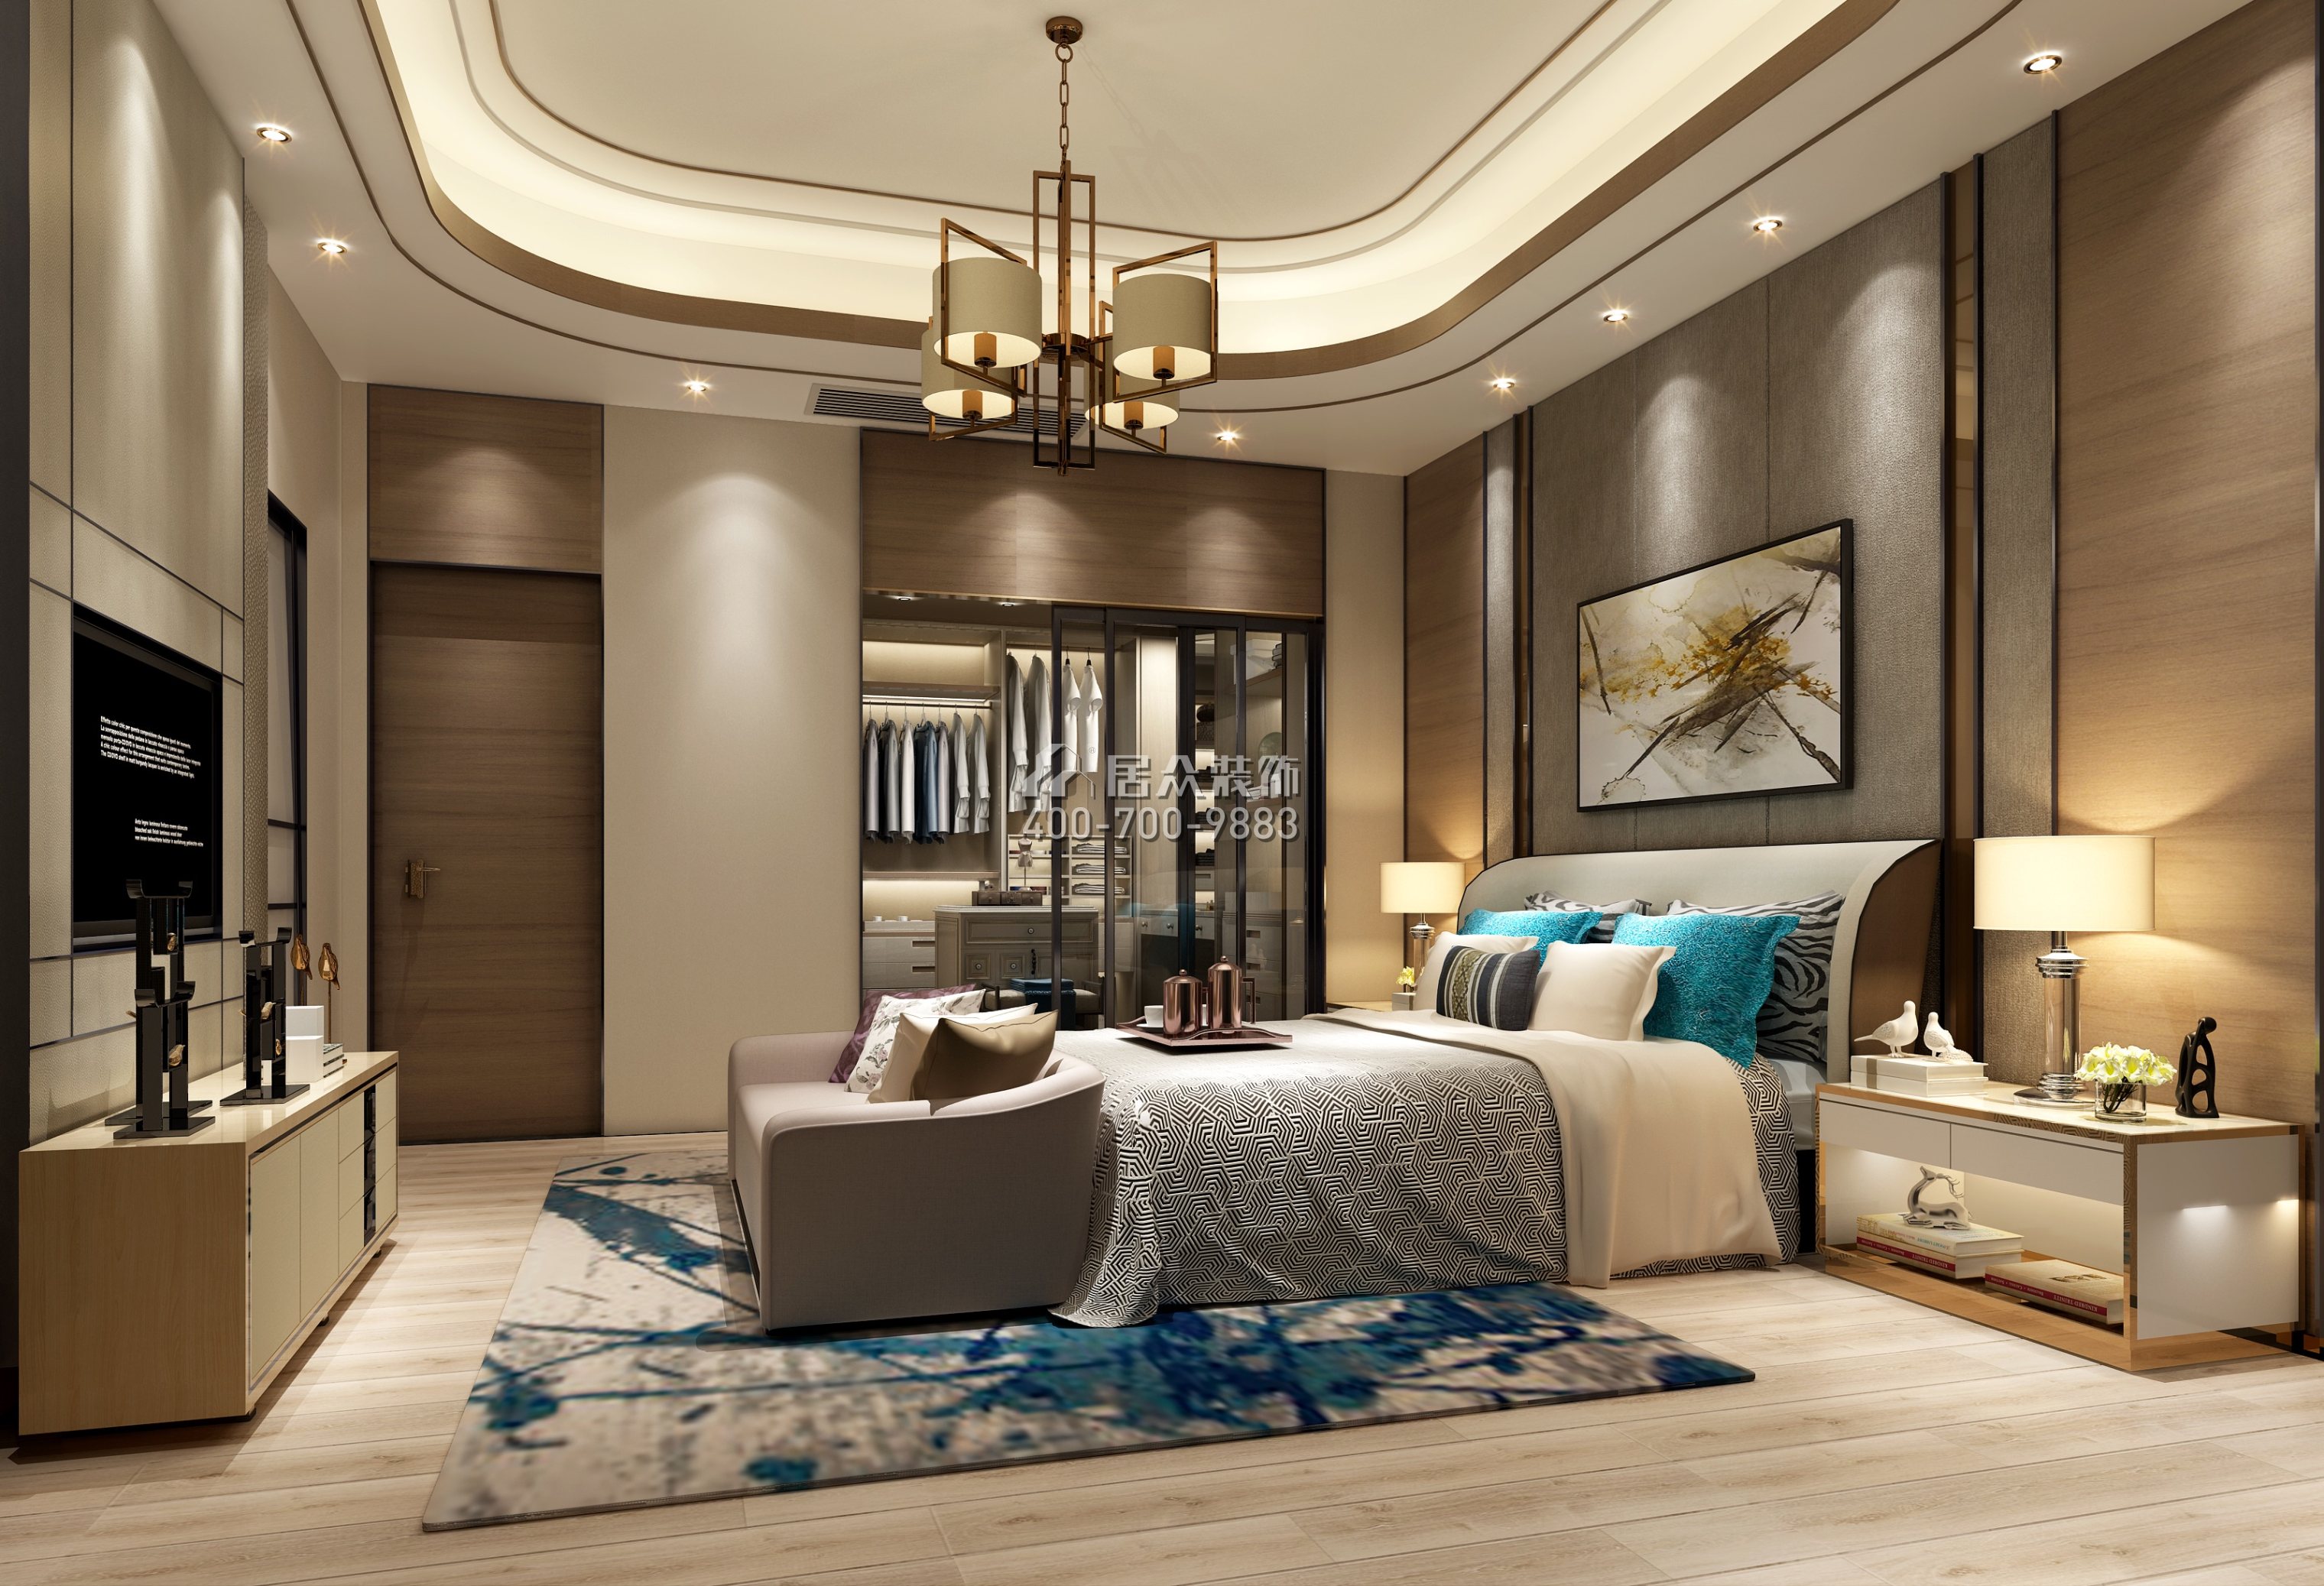 鼎峰尚境600平方米现代简约风格别墅户型卧室装修效果图